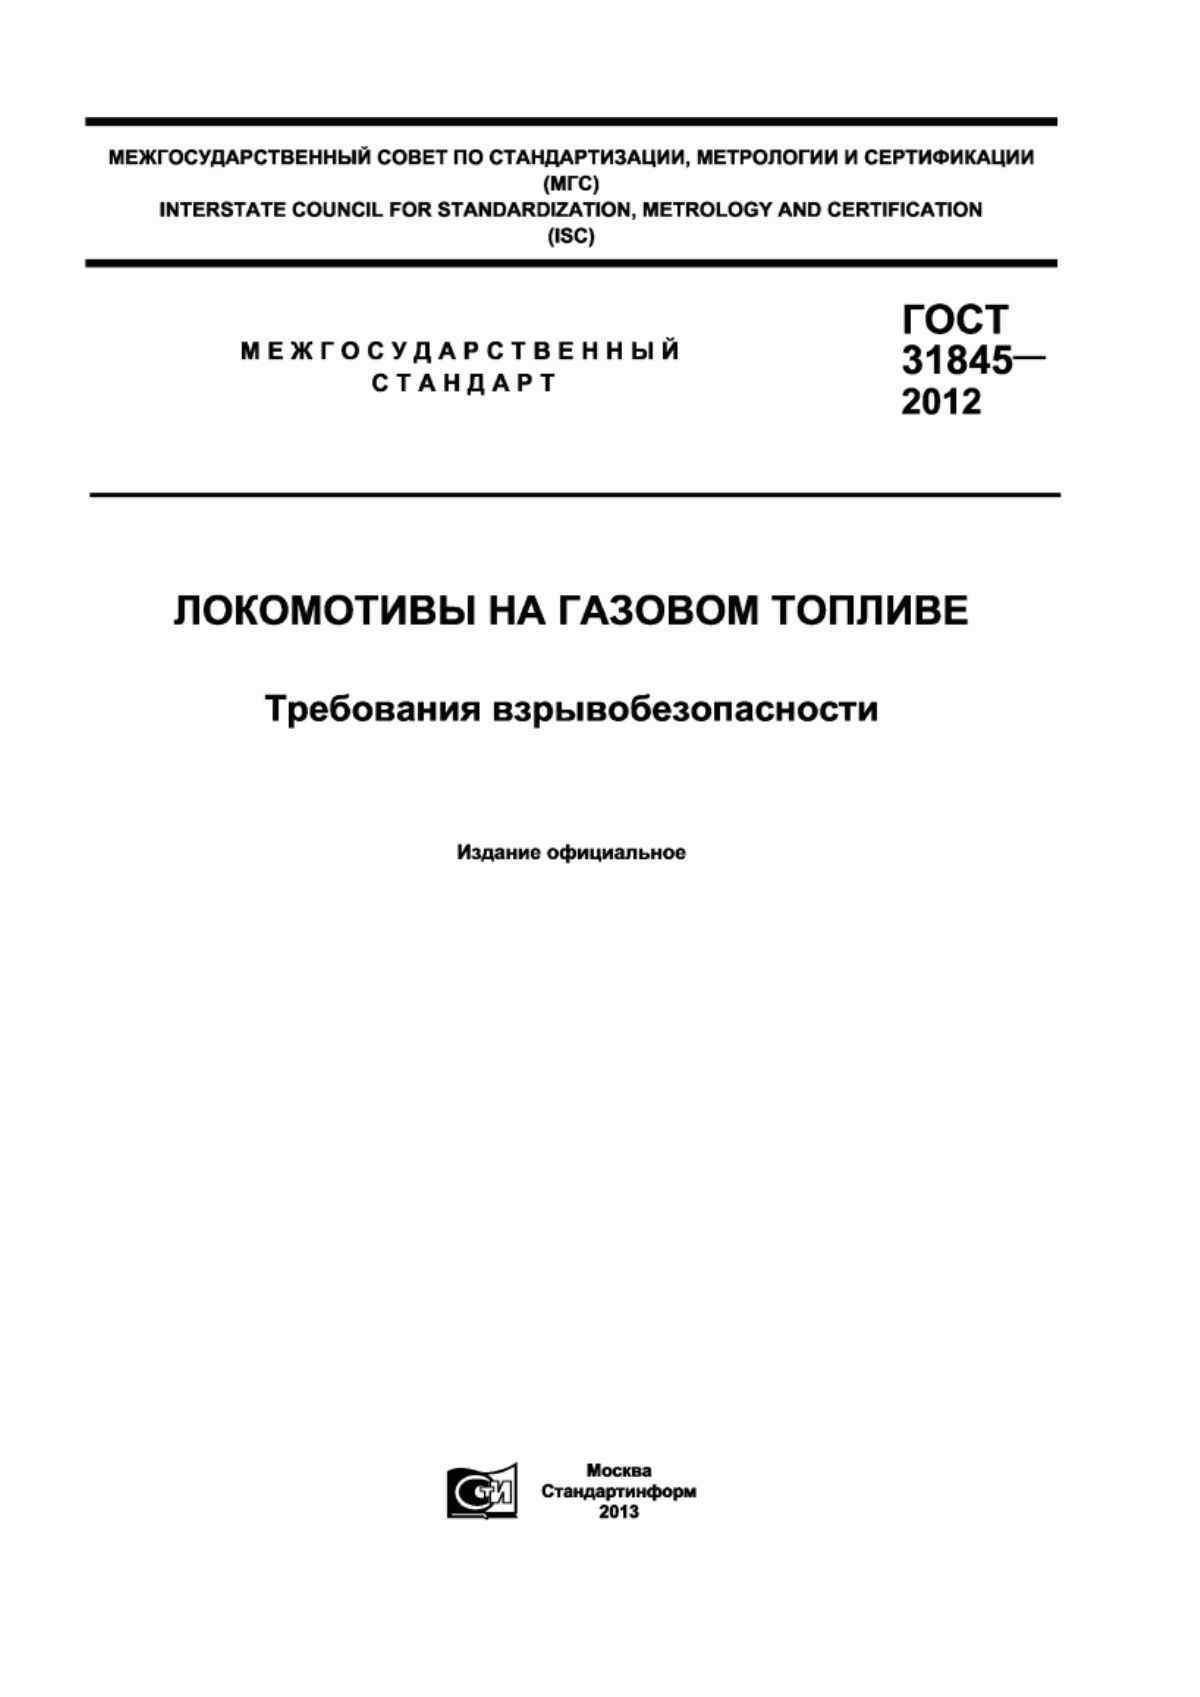 ГОСТ 31845-2012 Локомотивы, работающие на природном газе. Требования взрывобезопасности